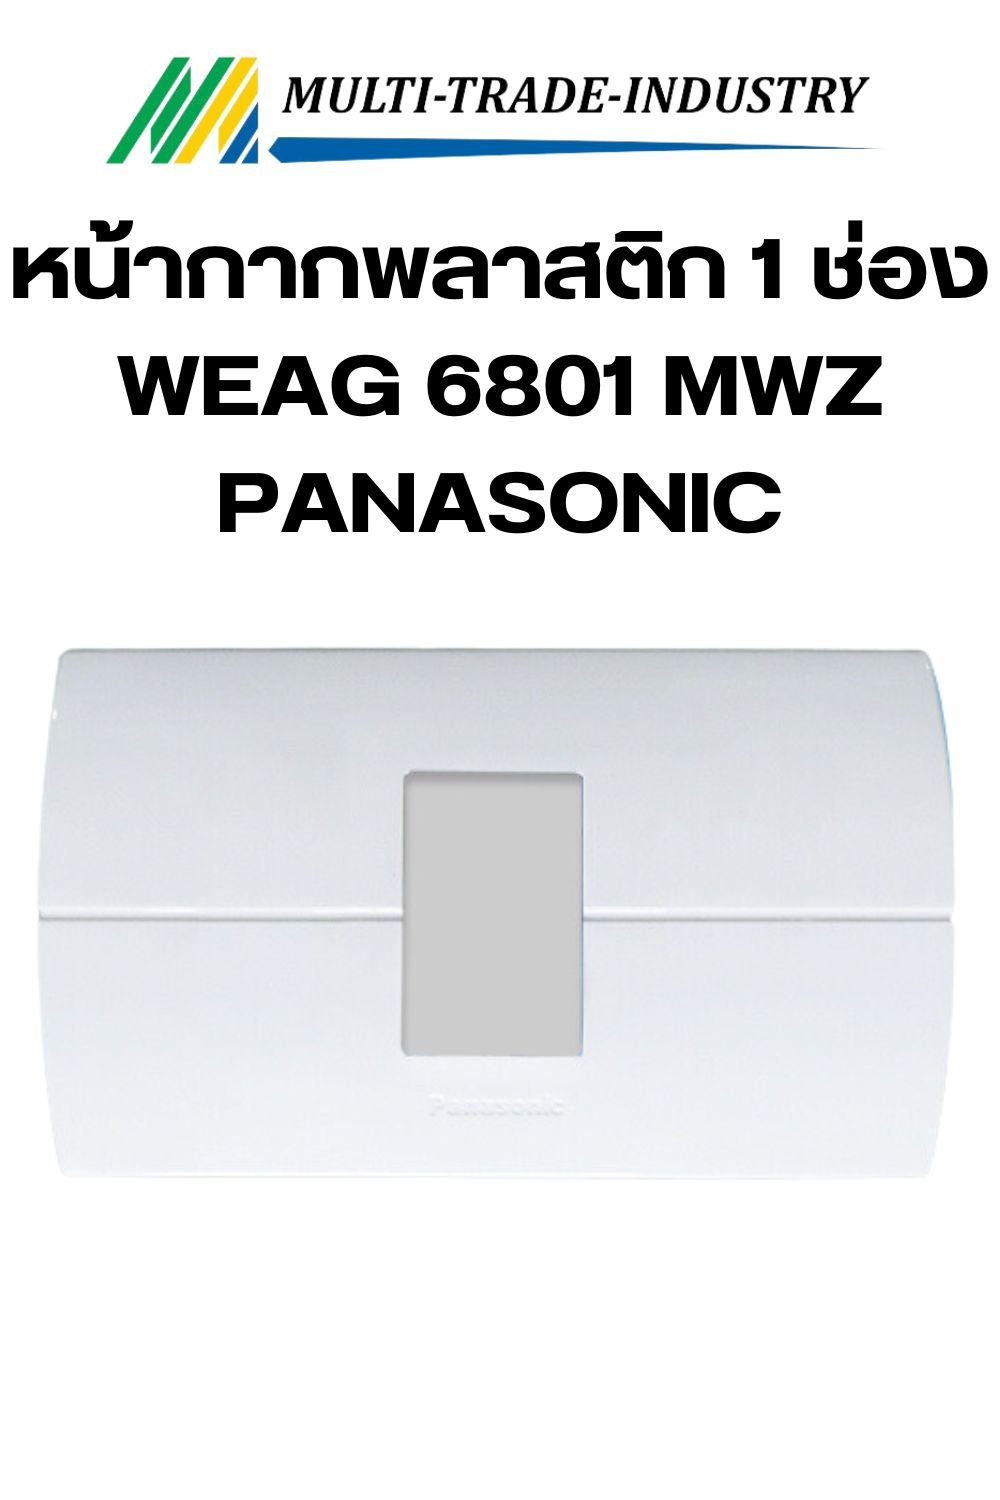 หน้ากากพลาสติก 1 ช่องอุปกรณ์ WEAG 6801 MWZ Panasonic